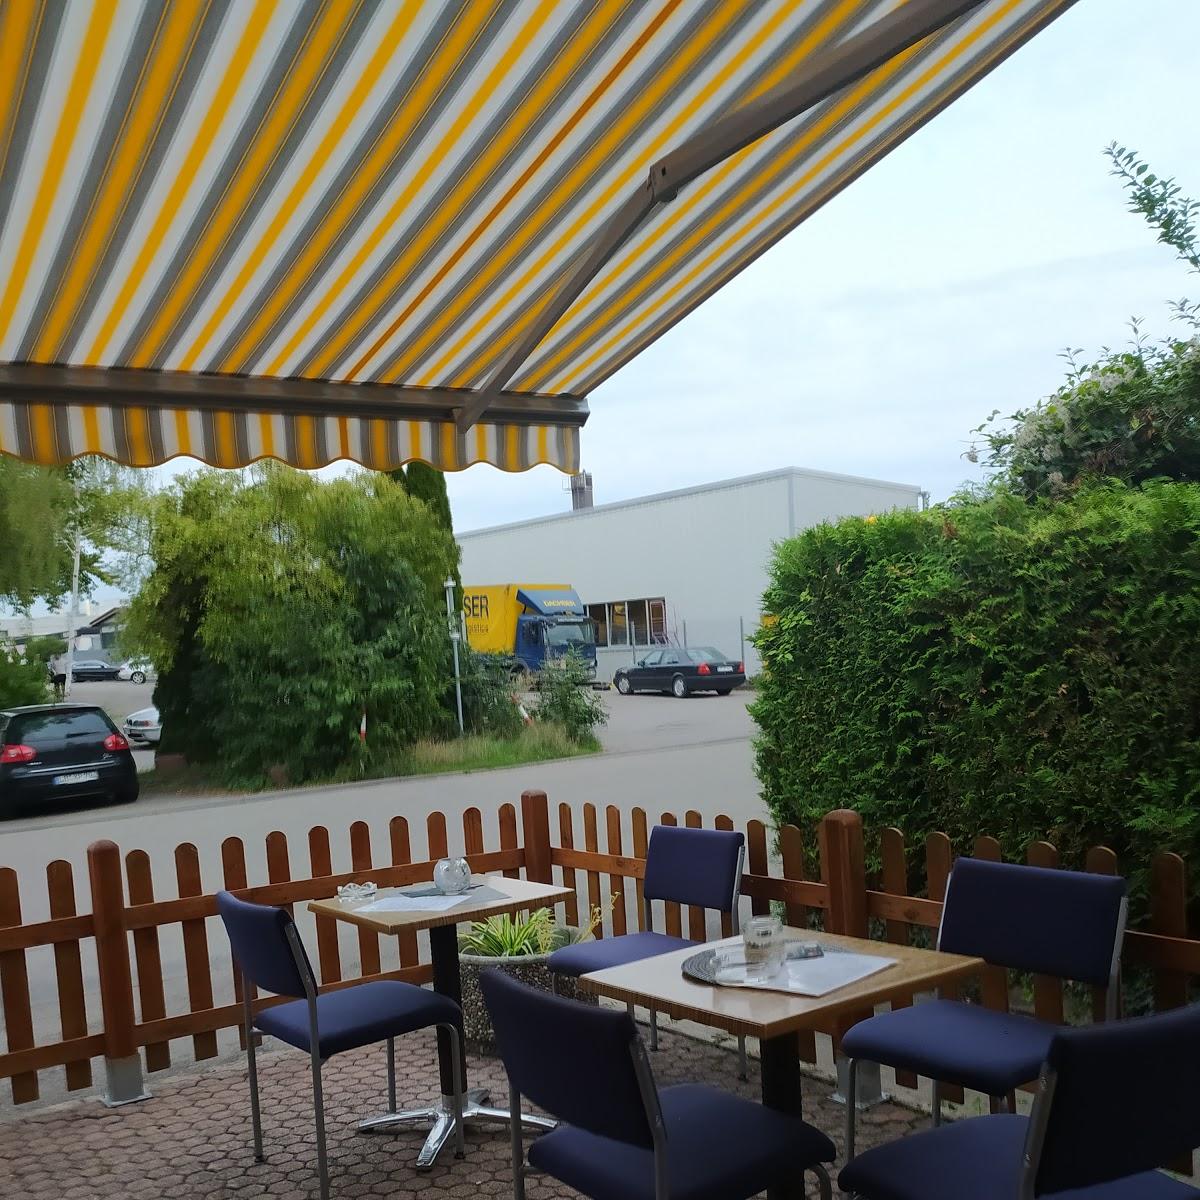 Restaurant "Gaststätte und Hotel Ermis" in Schwieberdingen